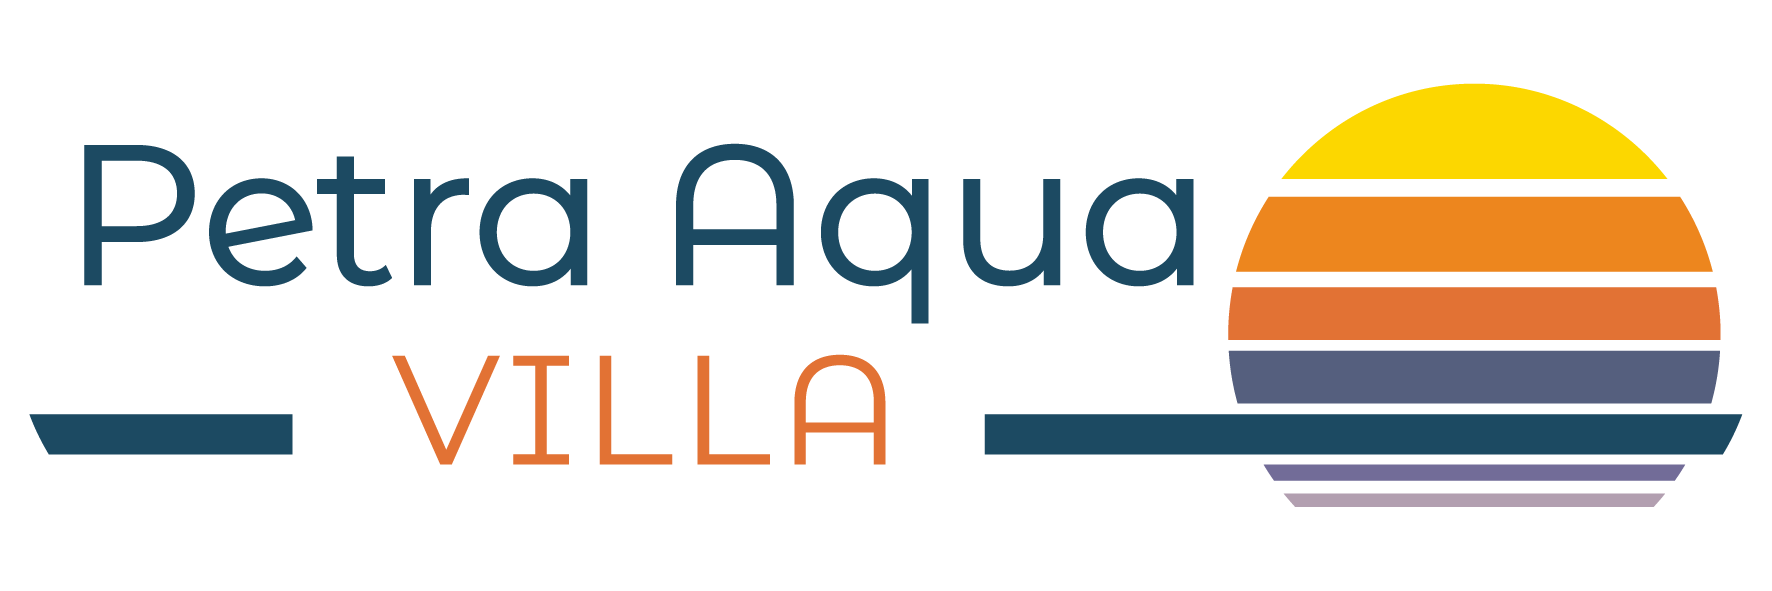 Official Web Site of Petra Aqua Villa